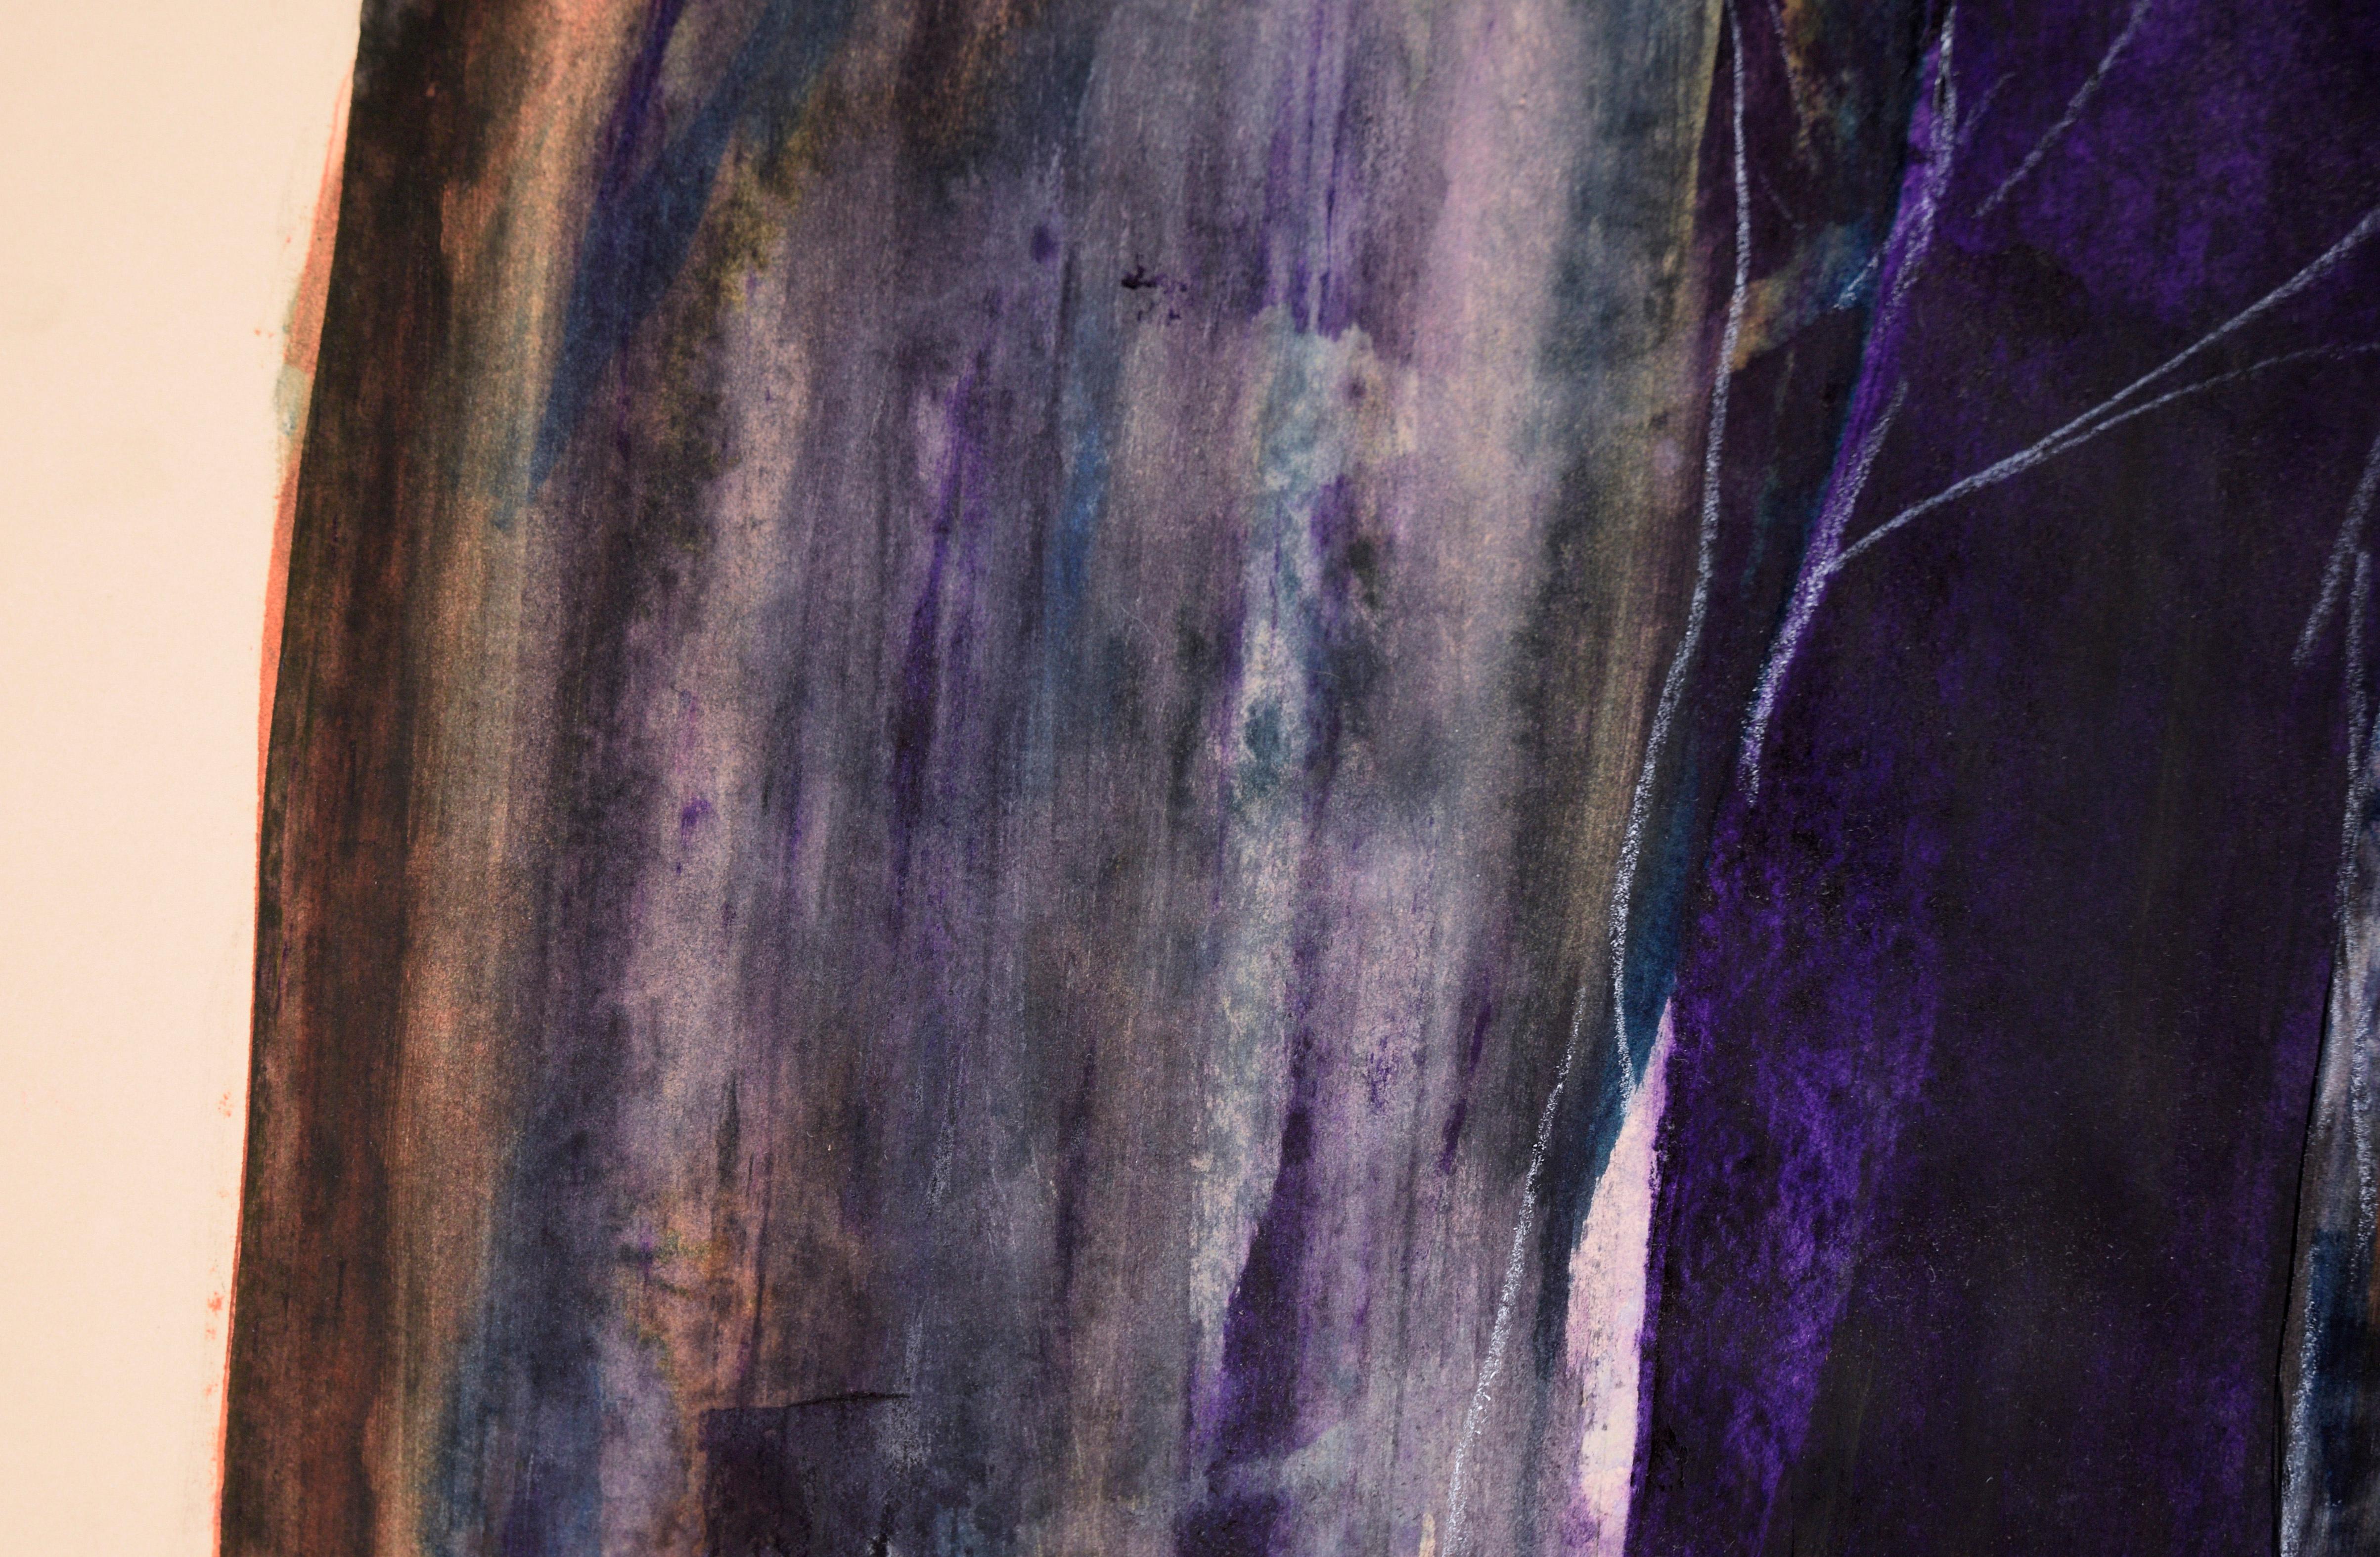 Nonne im Schatten - Figurative Komposition in Acryl auf Papier

Ein dunkles, abstrahiertes Porträt des in Kalifornien lebenden Künstlers Ricardo de Silva (Amerikaner/Brasilien, 20. Jahrhundert). Dieses Stück besteht aus abstrahierten Flecken in